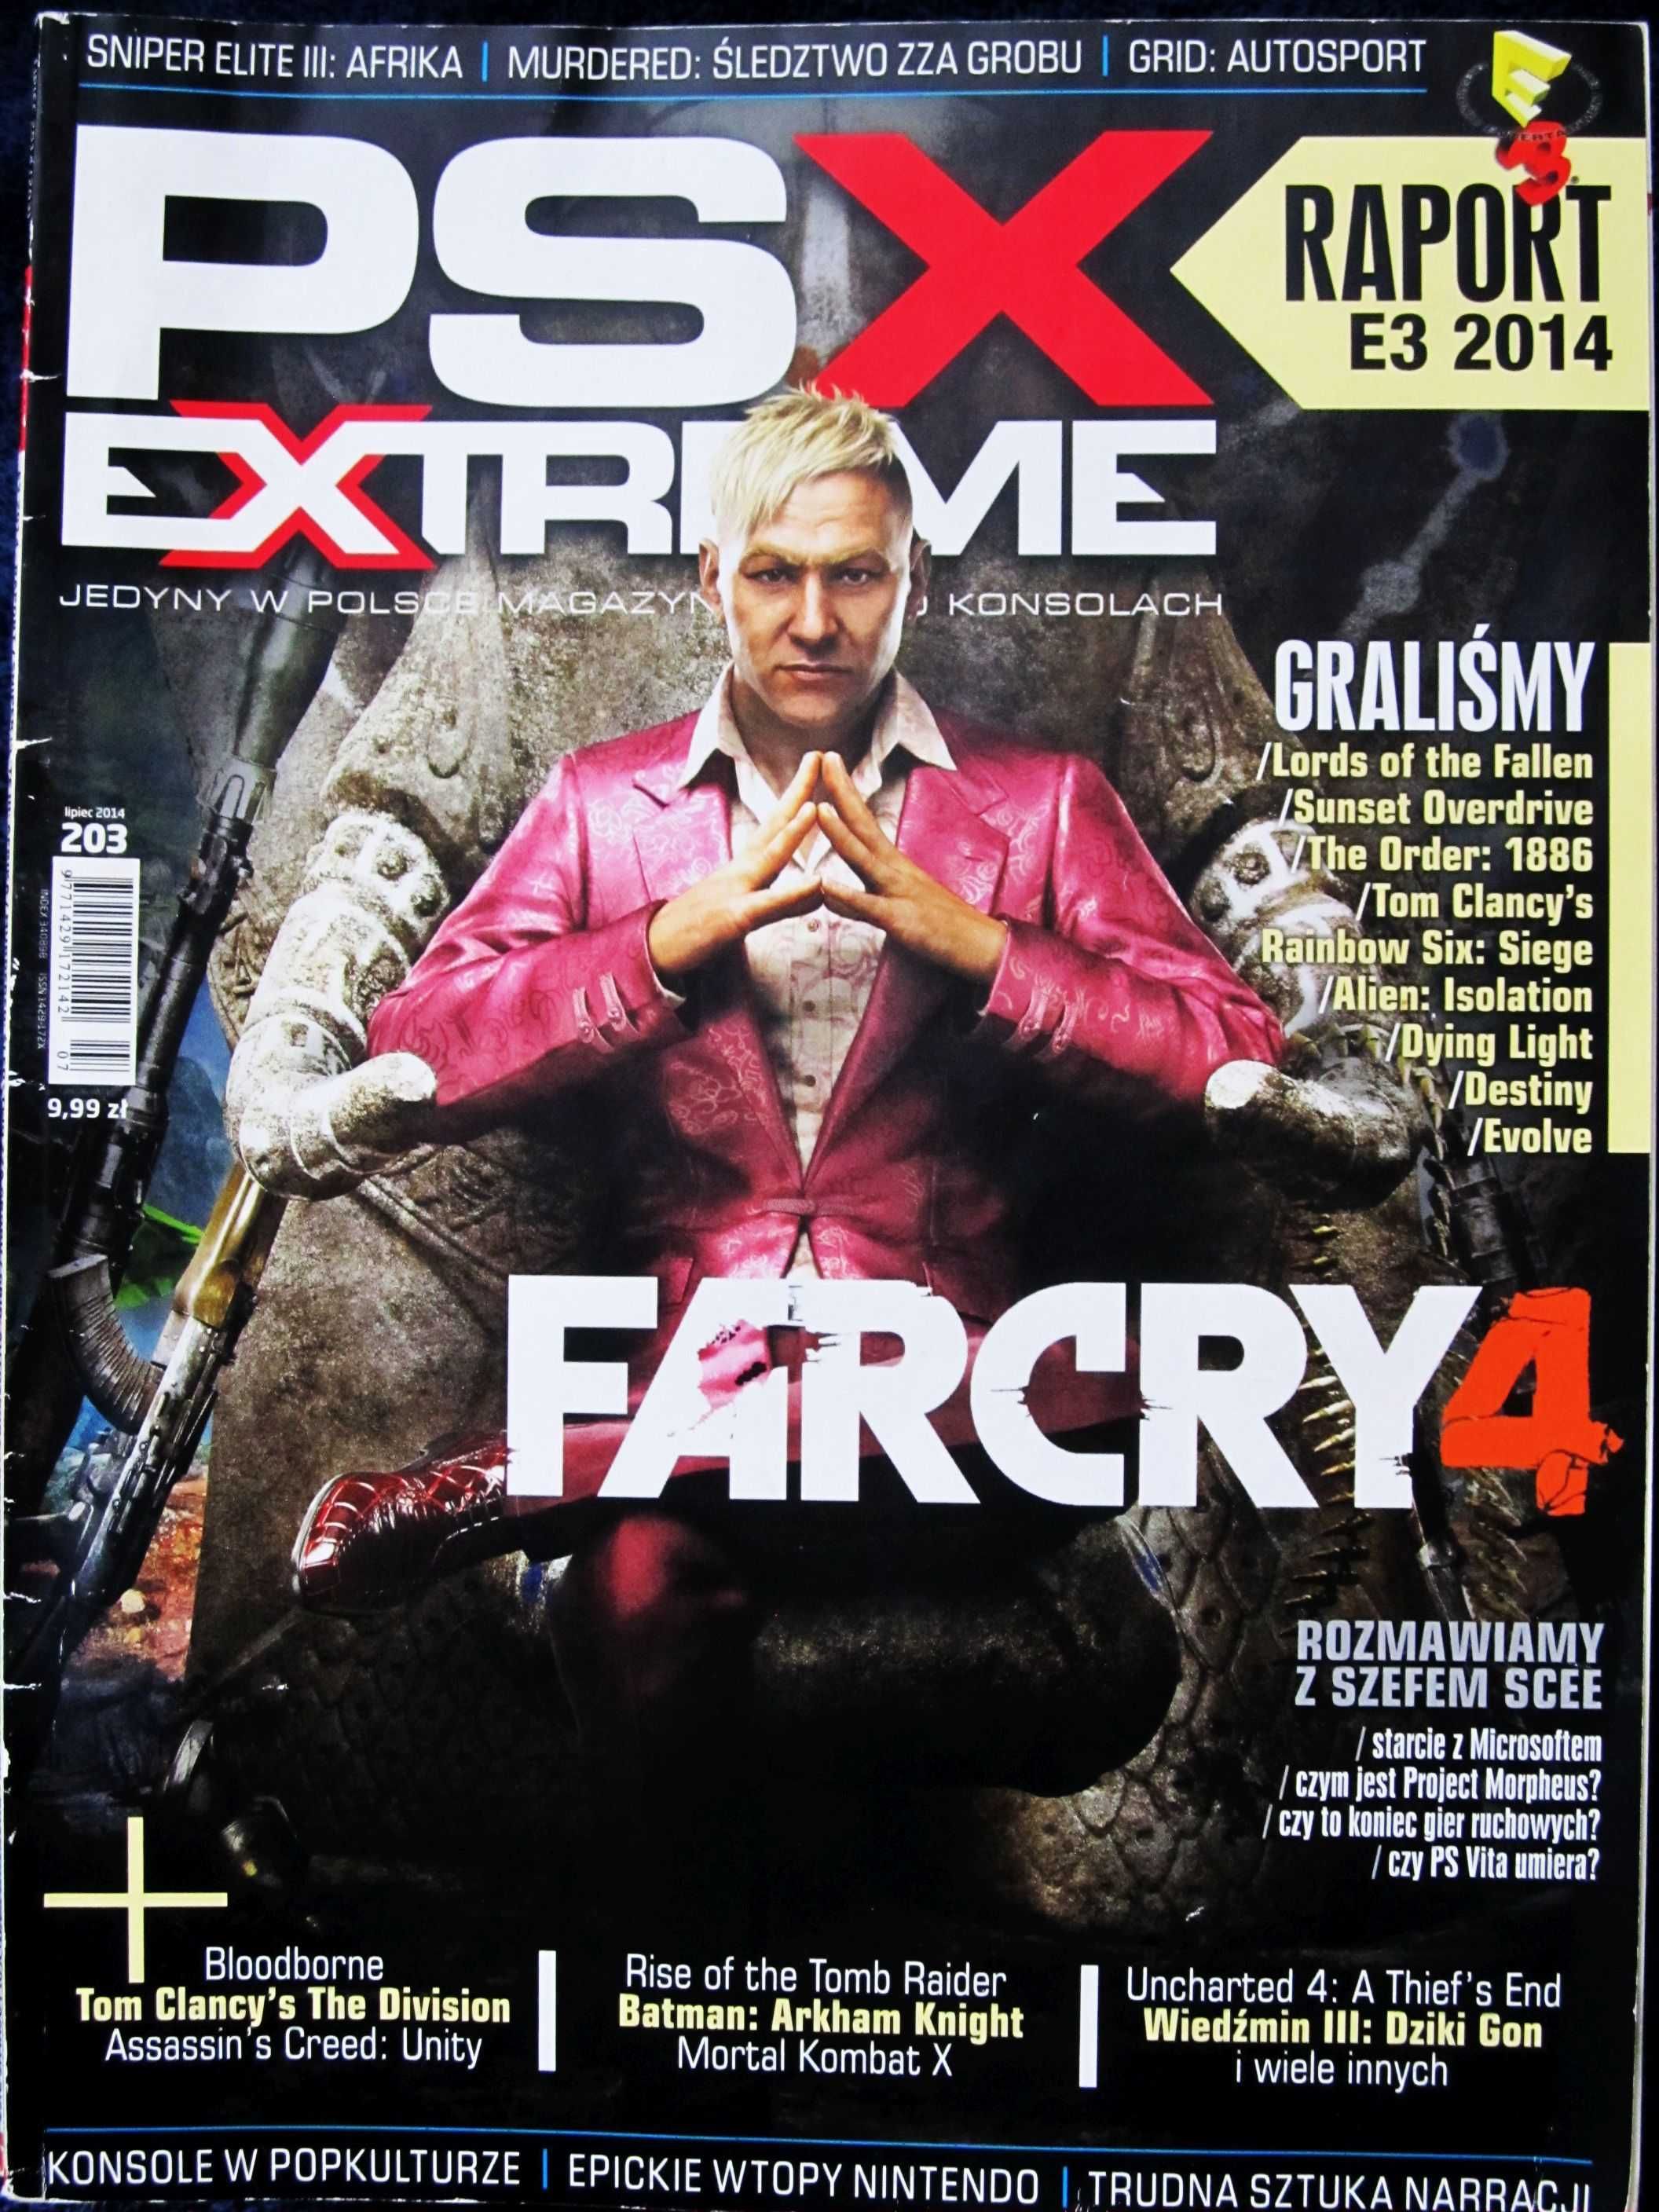 PSX 203 lipiec 2014 Farcry 4,Bloodborne,Wiedźmin III,Tom Clancy's